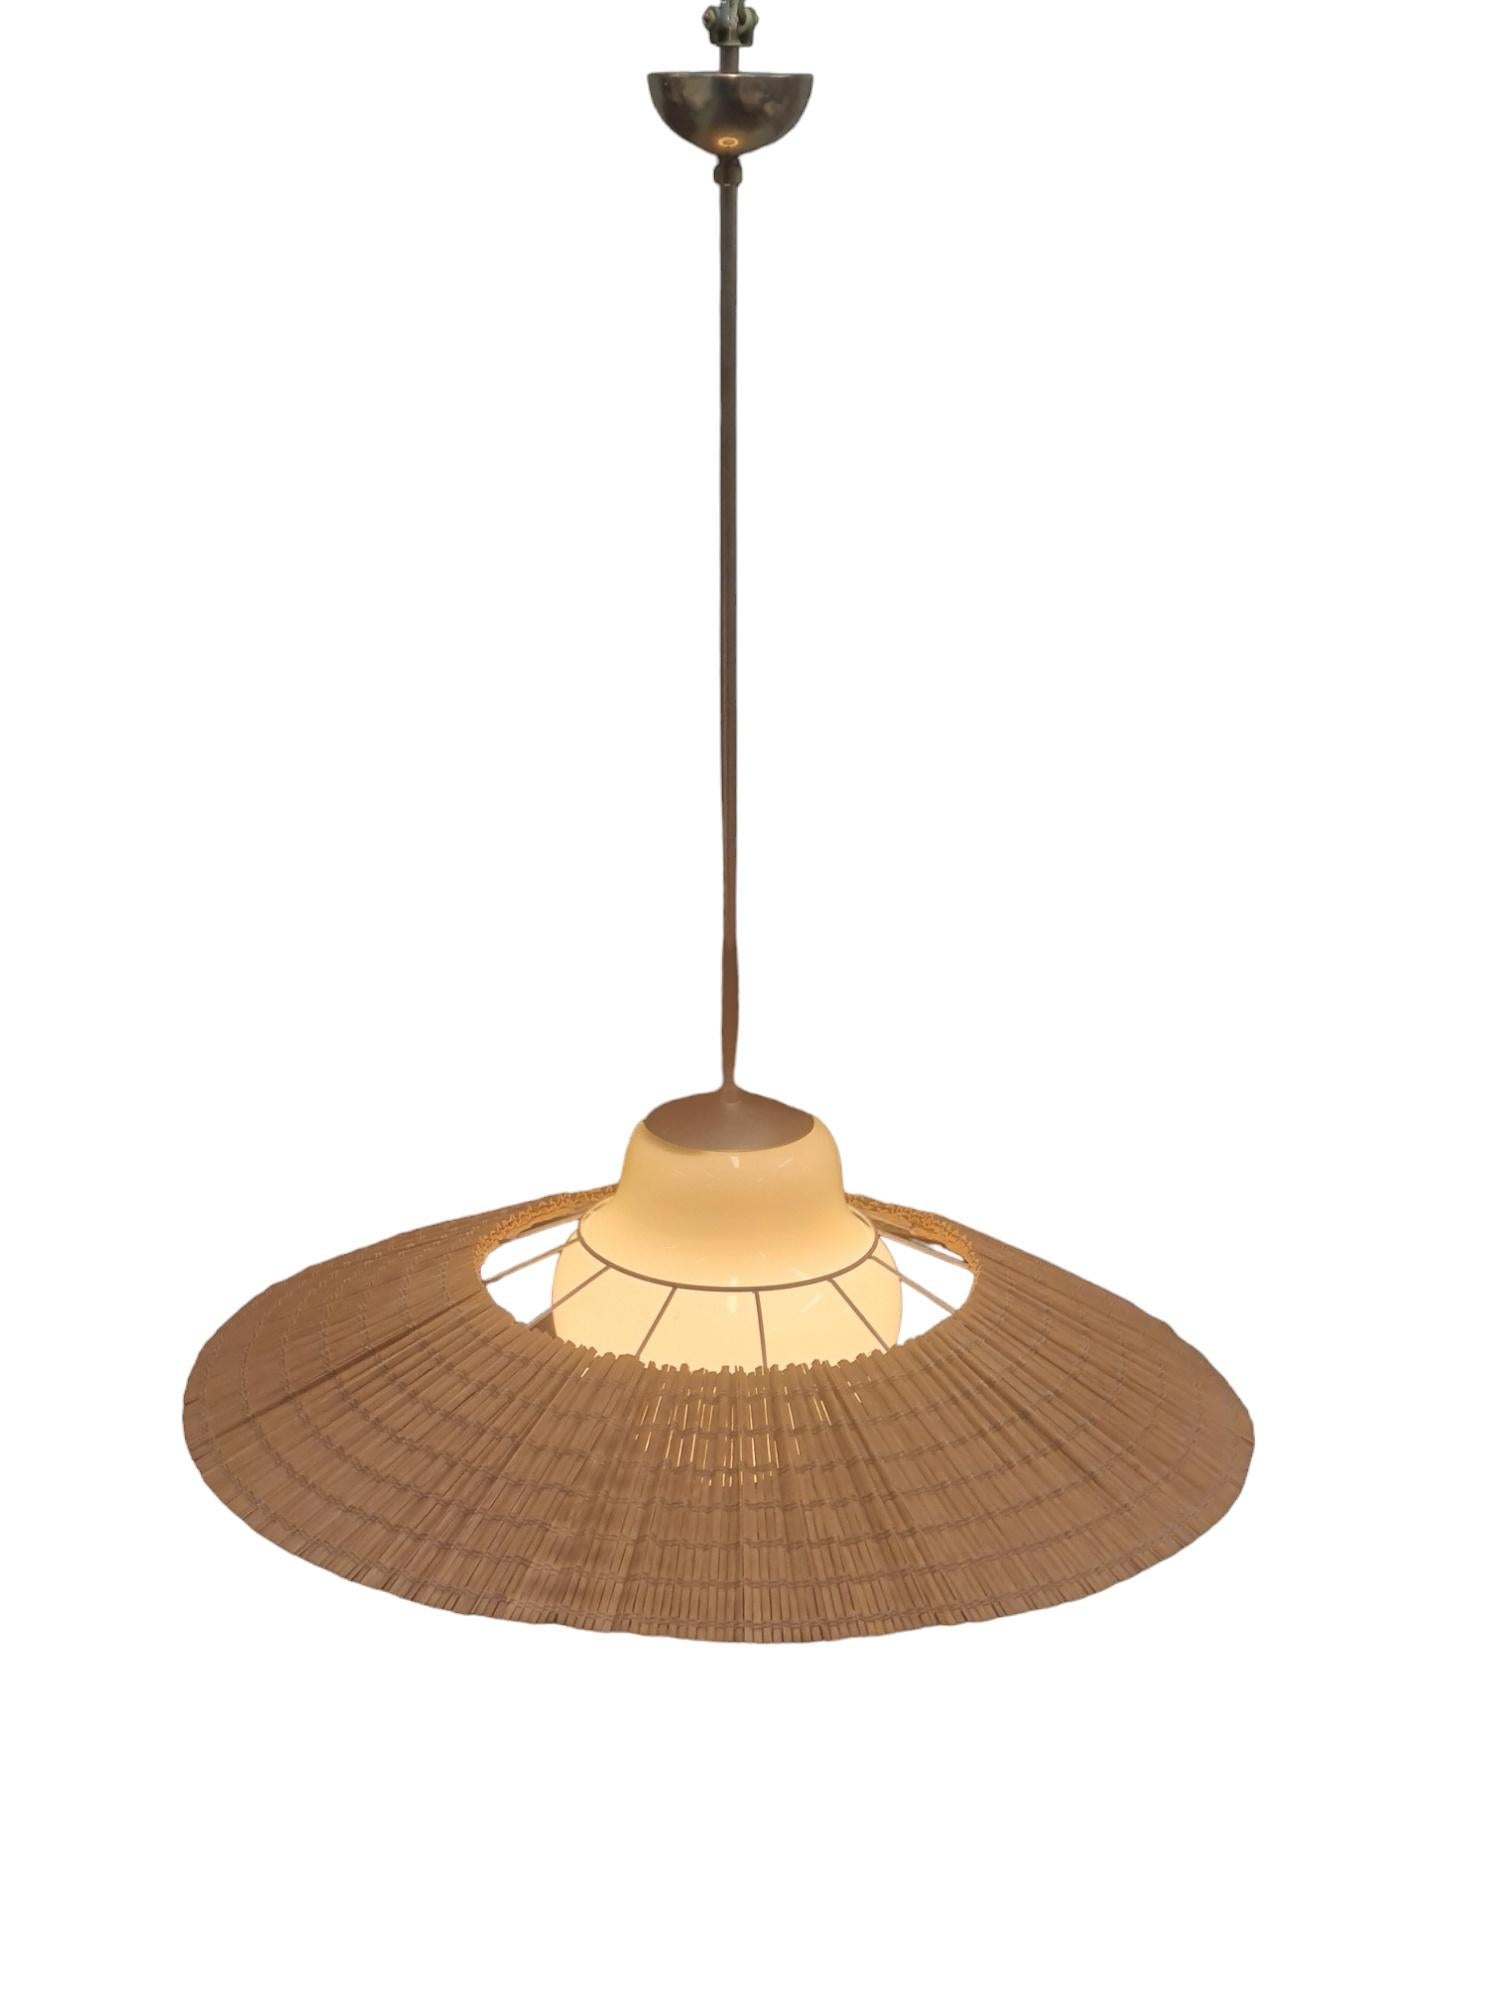 Lisa Johansson-Papé Ceiling Lamp model 1088, Orno 3